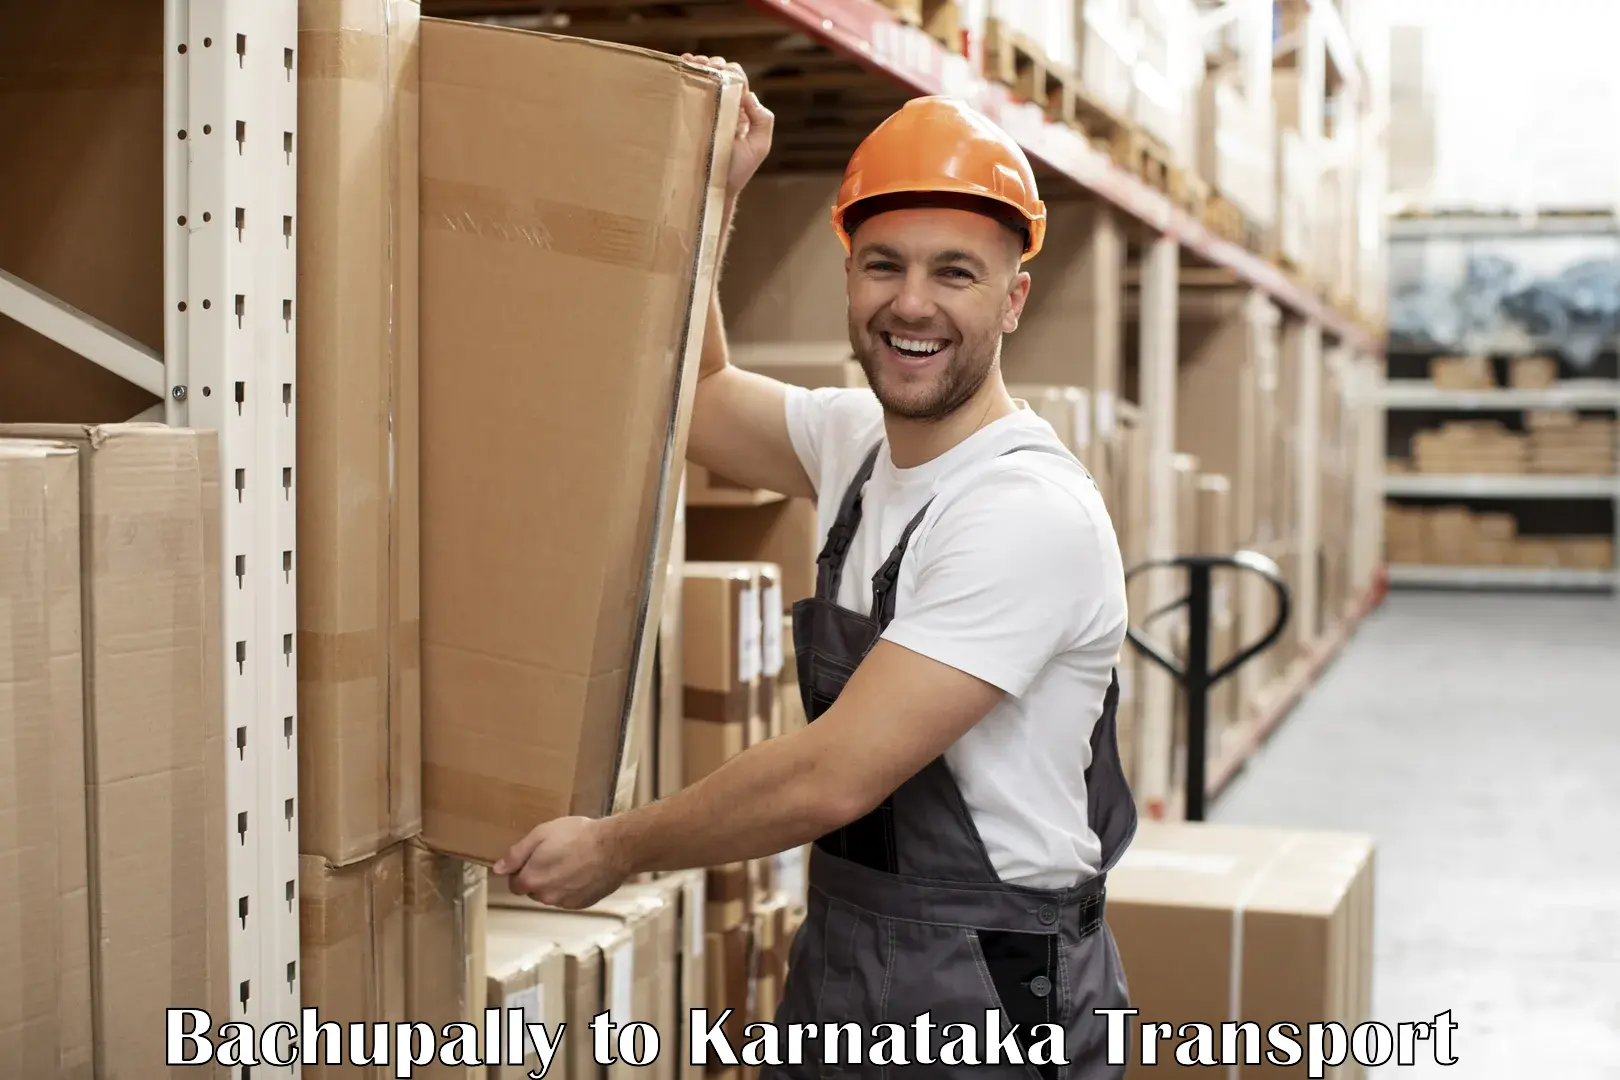 Lorry transport service Bachupally to Karnataka